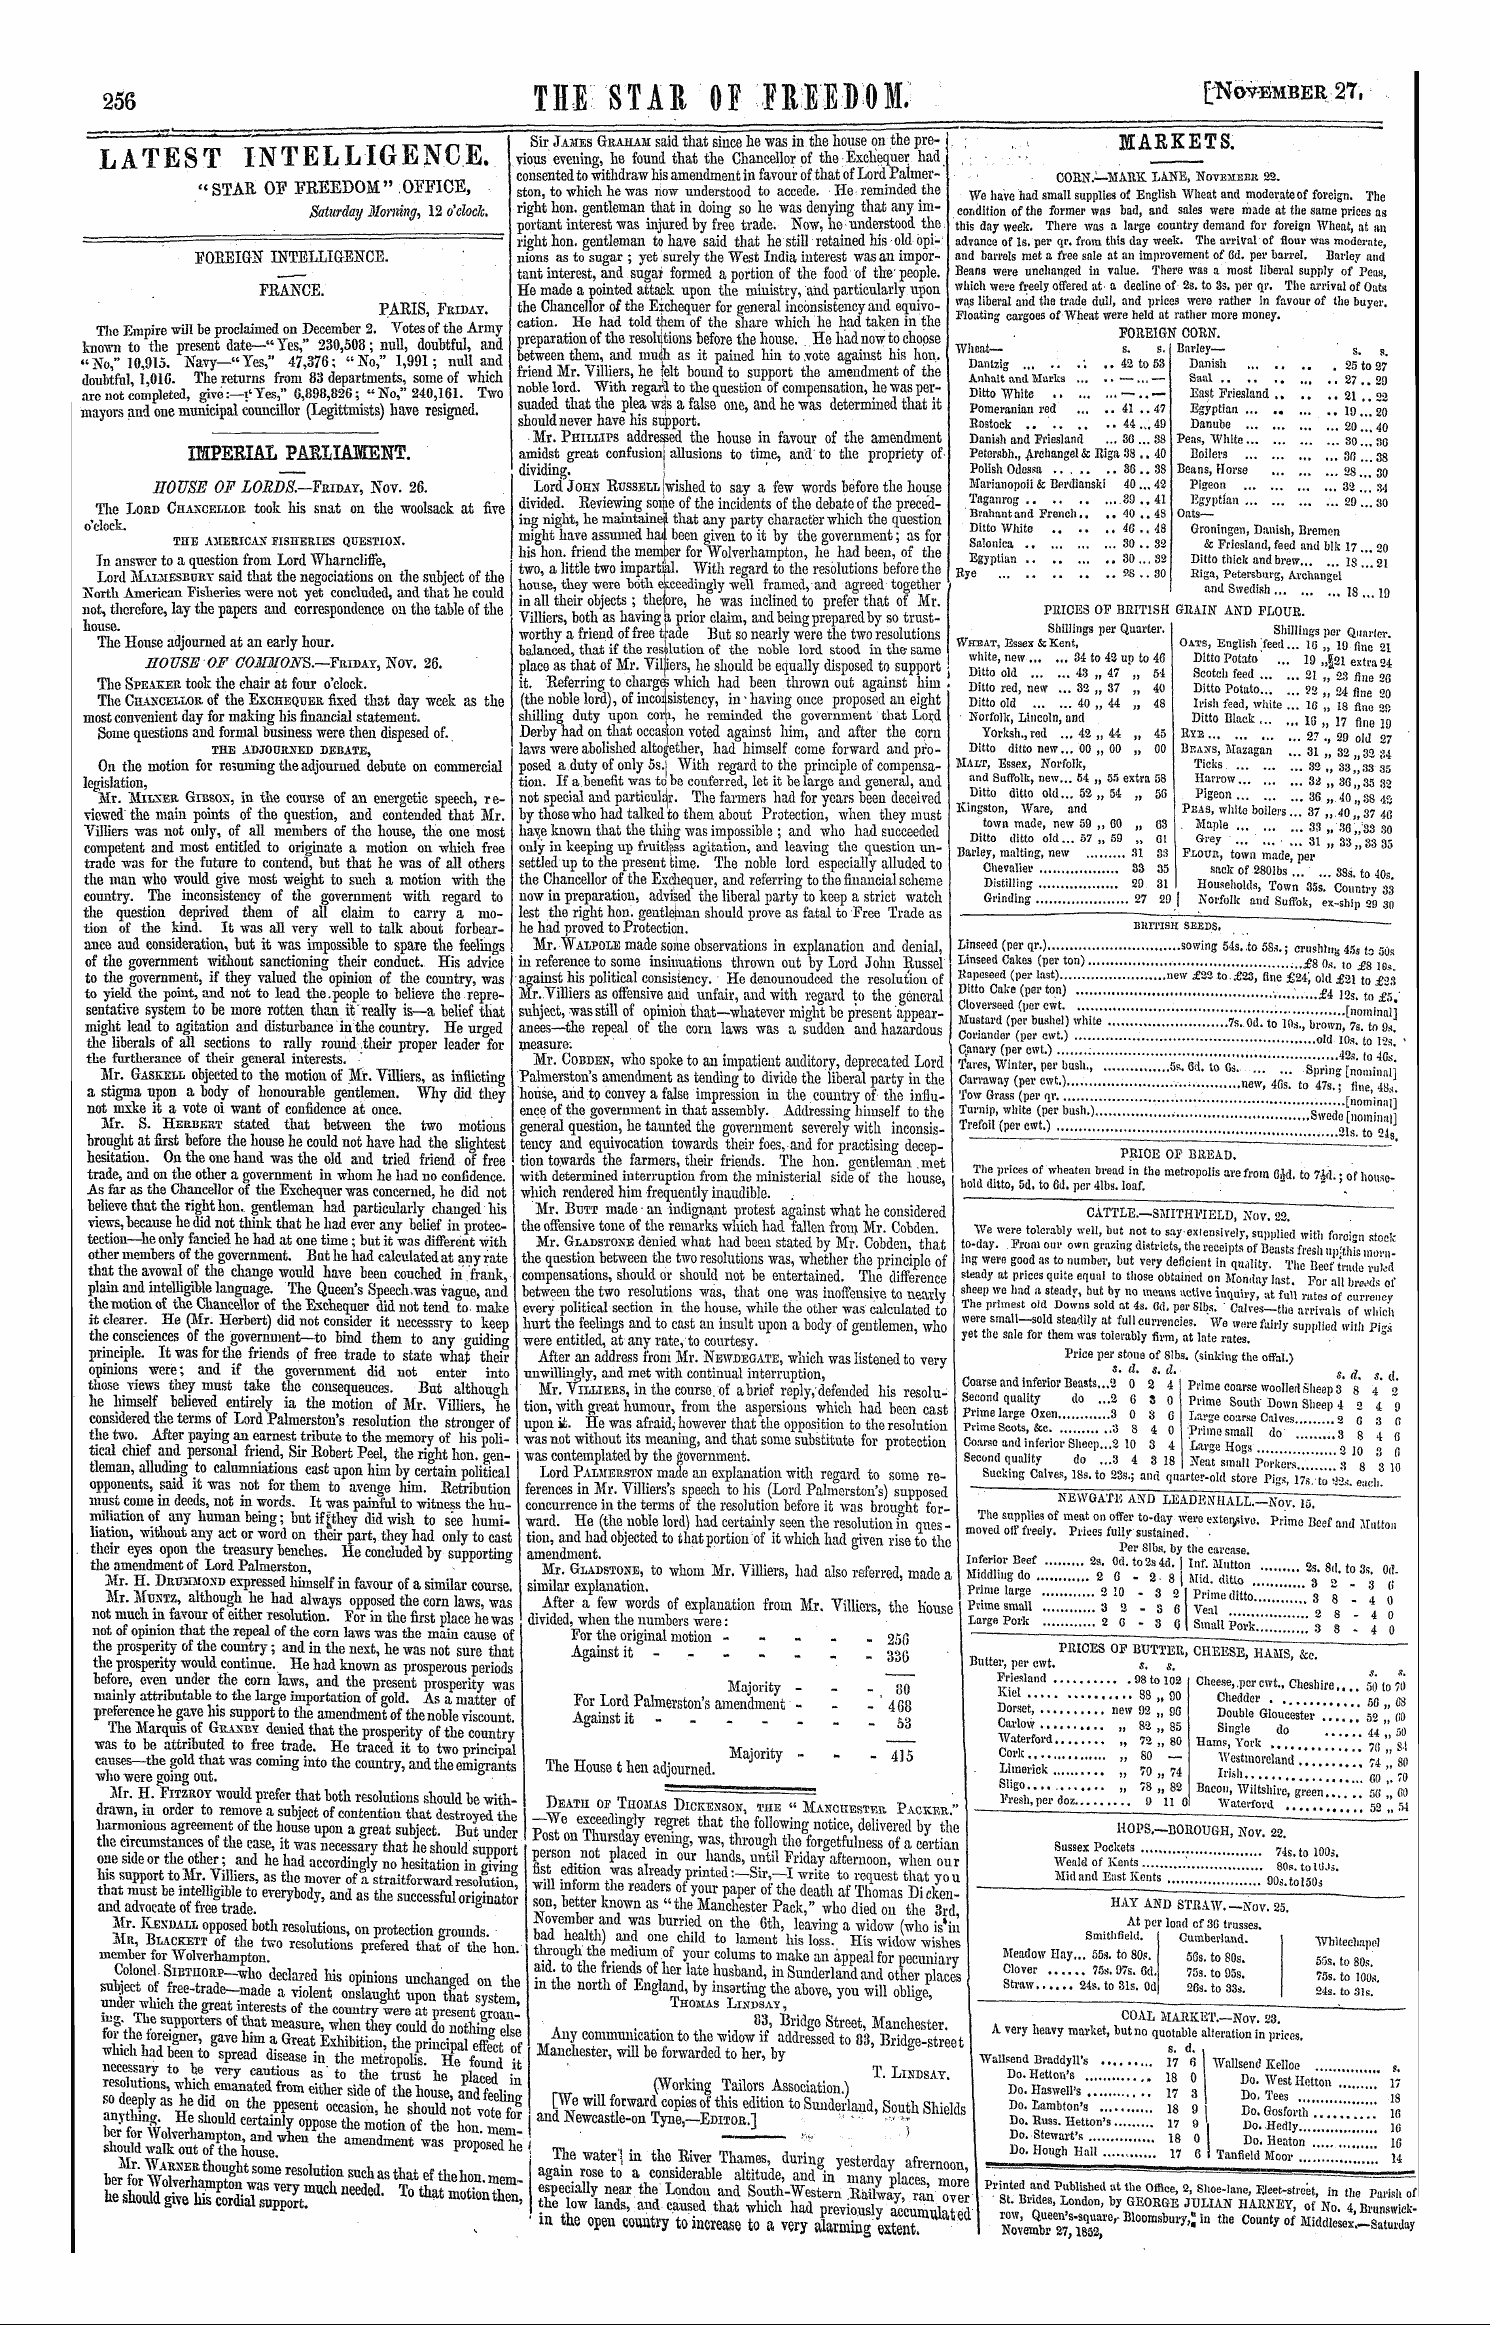 Northern Star (1837-1852): jS F Y, 1st edition - Ar01614